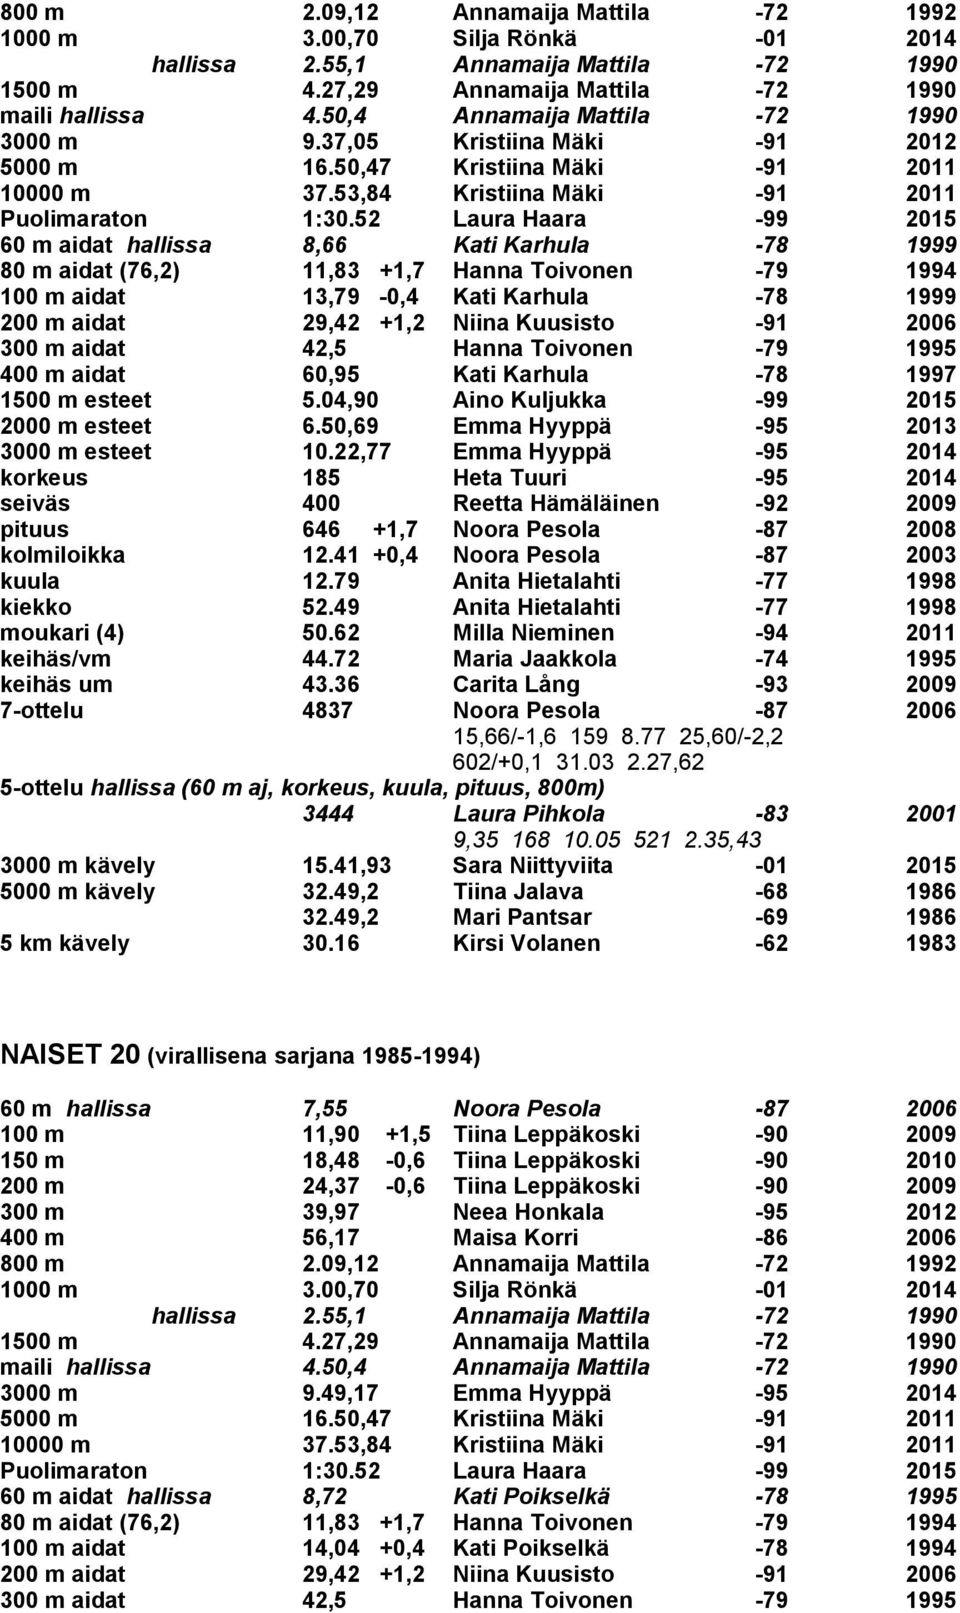 1997 pituus 646 +1,7 Noora Pesola -87 2008 kuula 12.79 Anita Hietalahti -77 1998 kiekko 52.49 Anita Hietalahti -77 1998 keihäs/vm 44.72 Maria Jaakkola -74 1995 keihäs um 43.